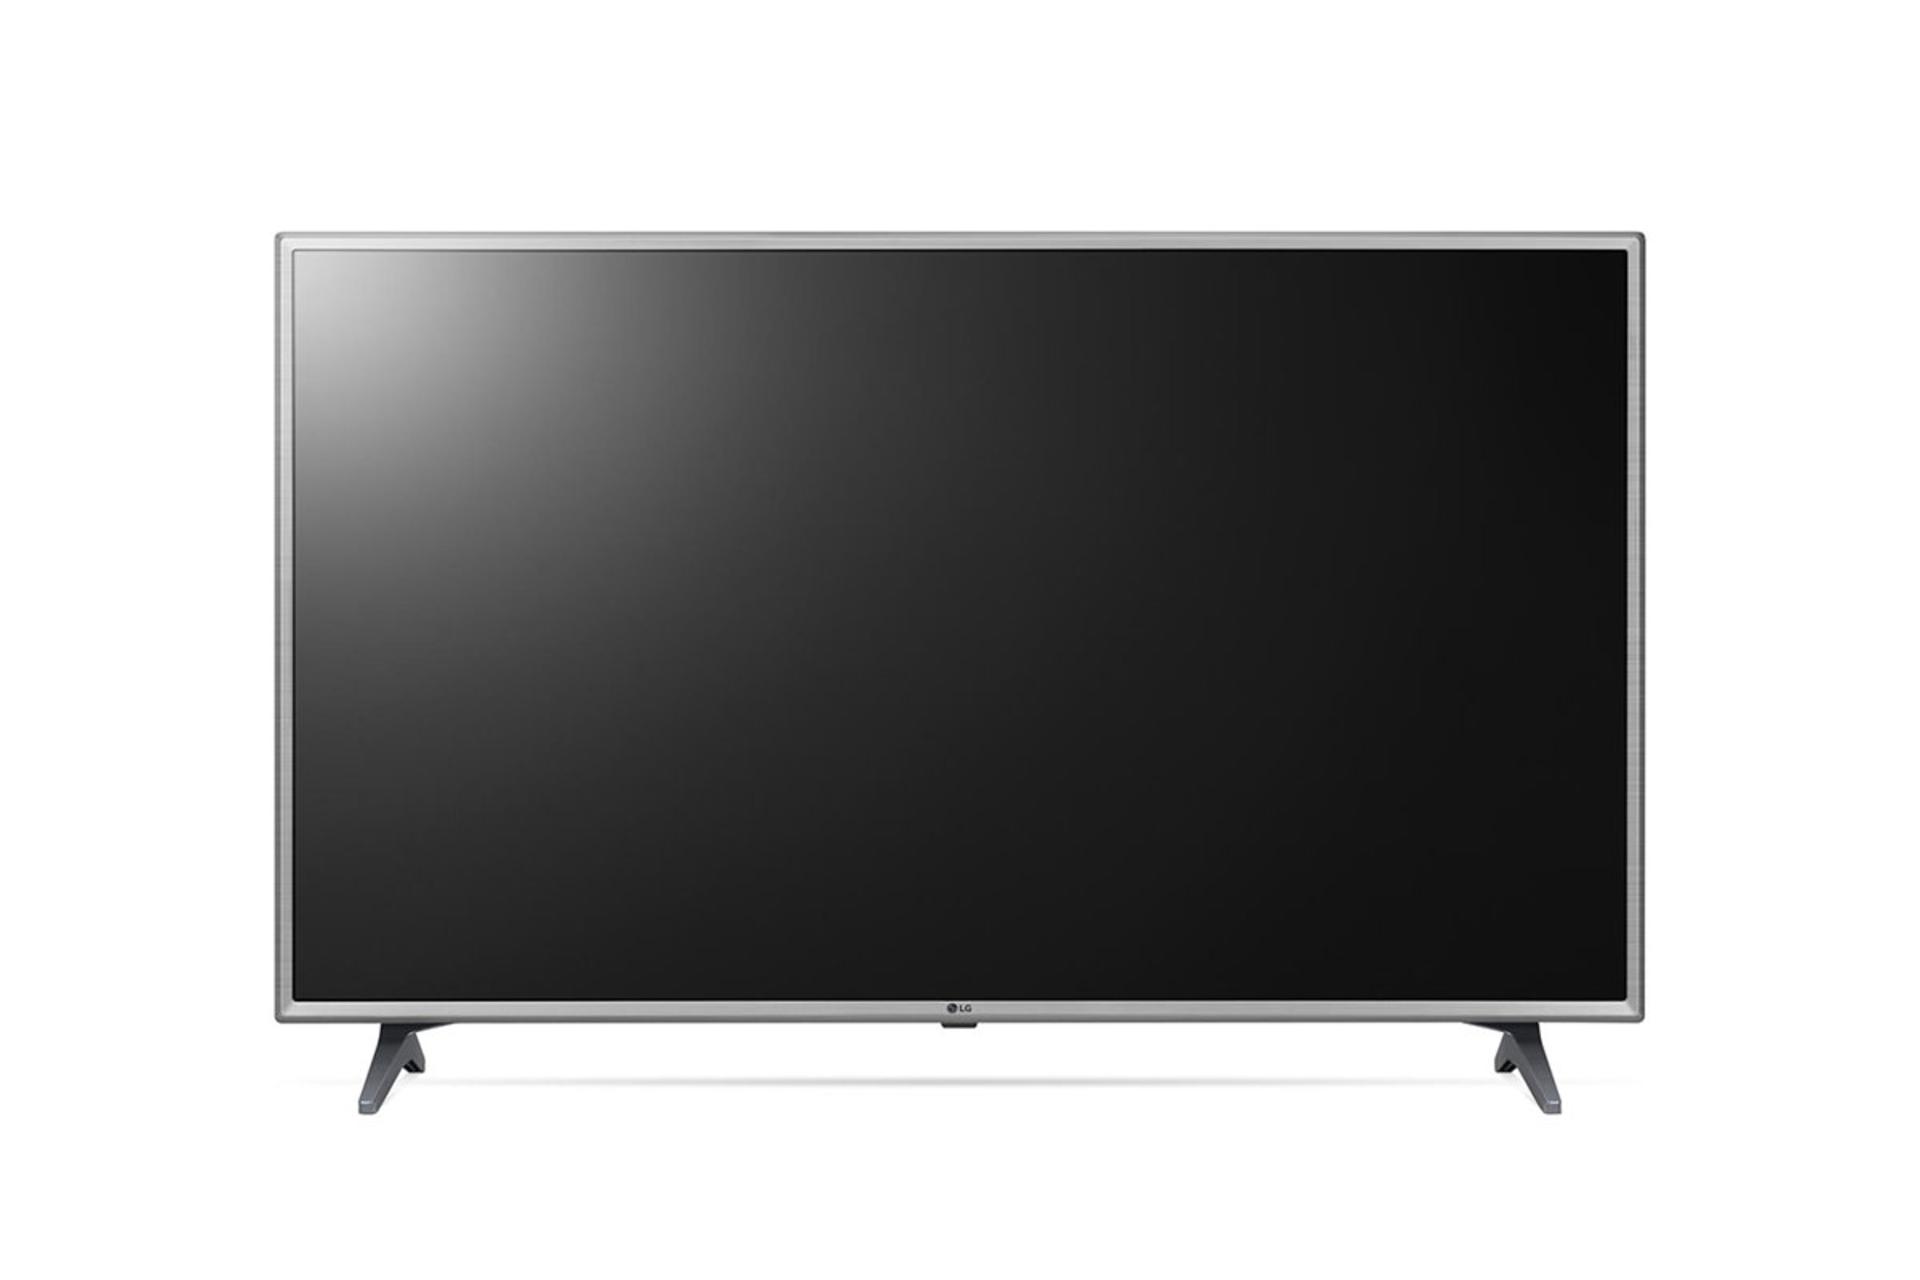  نمای جلوی تلویزیون ال جی LK6300 مدل 49 اینچ با رنگ نقره ای و صفحه خاموش